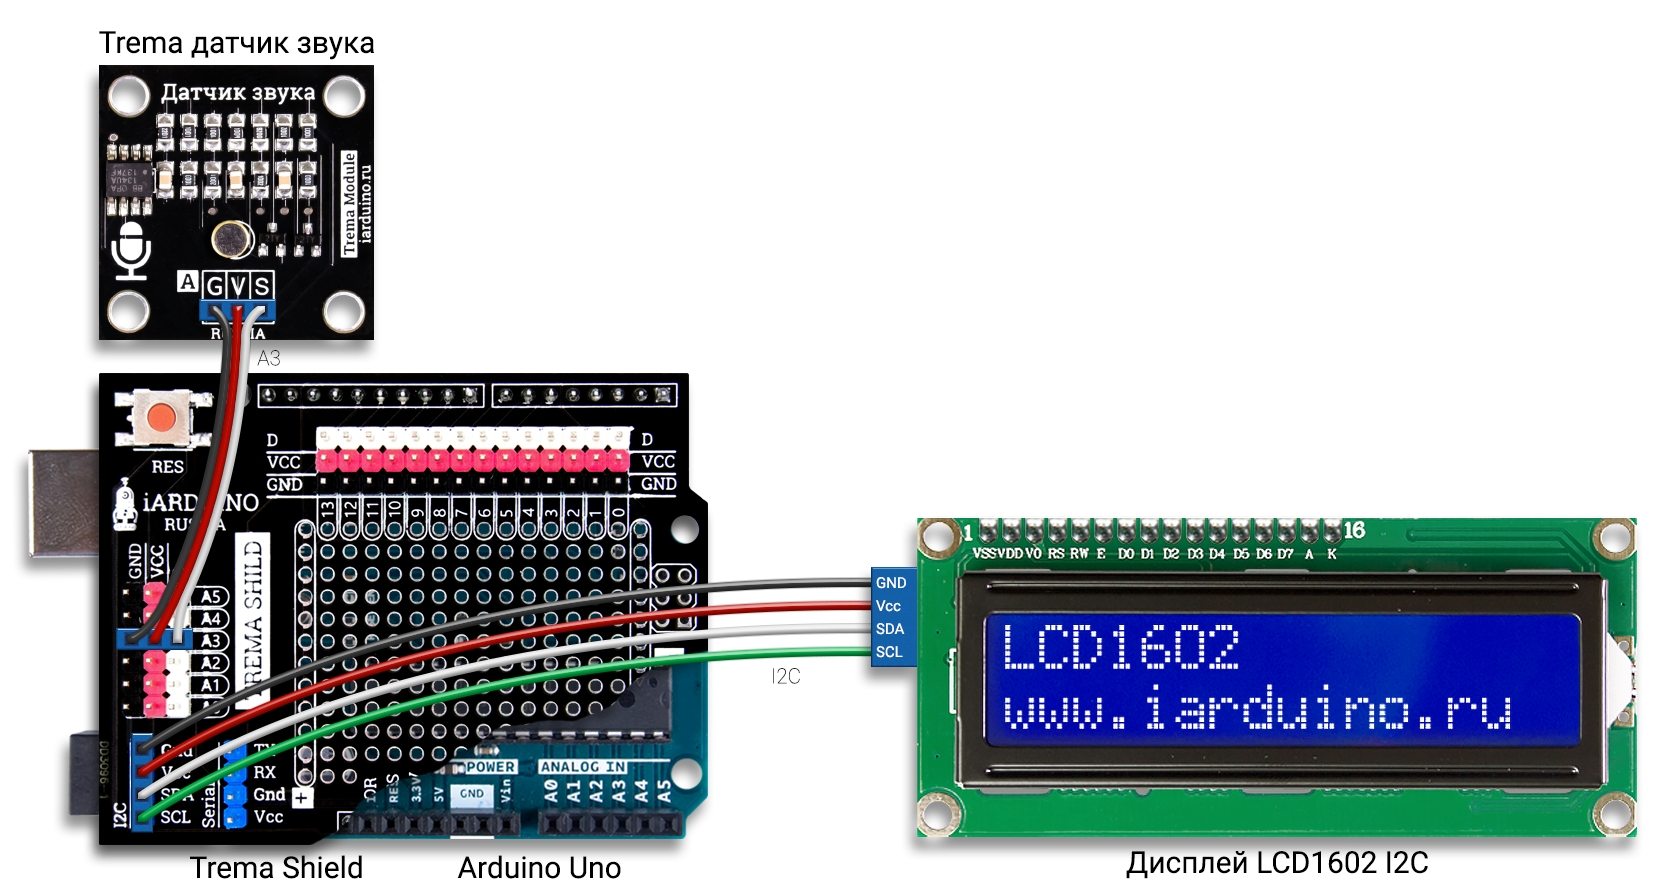 Декодер азбуки Морзе на Arduino UNO с выводом данных в LCD дисплей по шине I2C